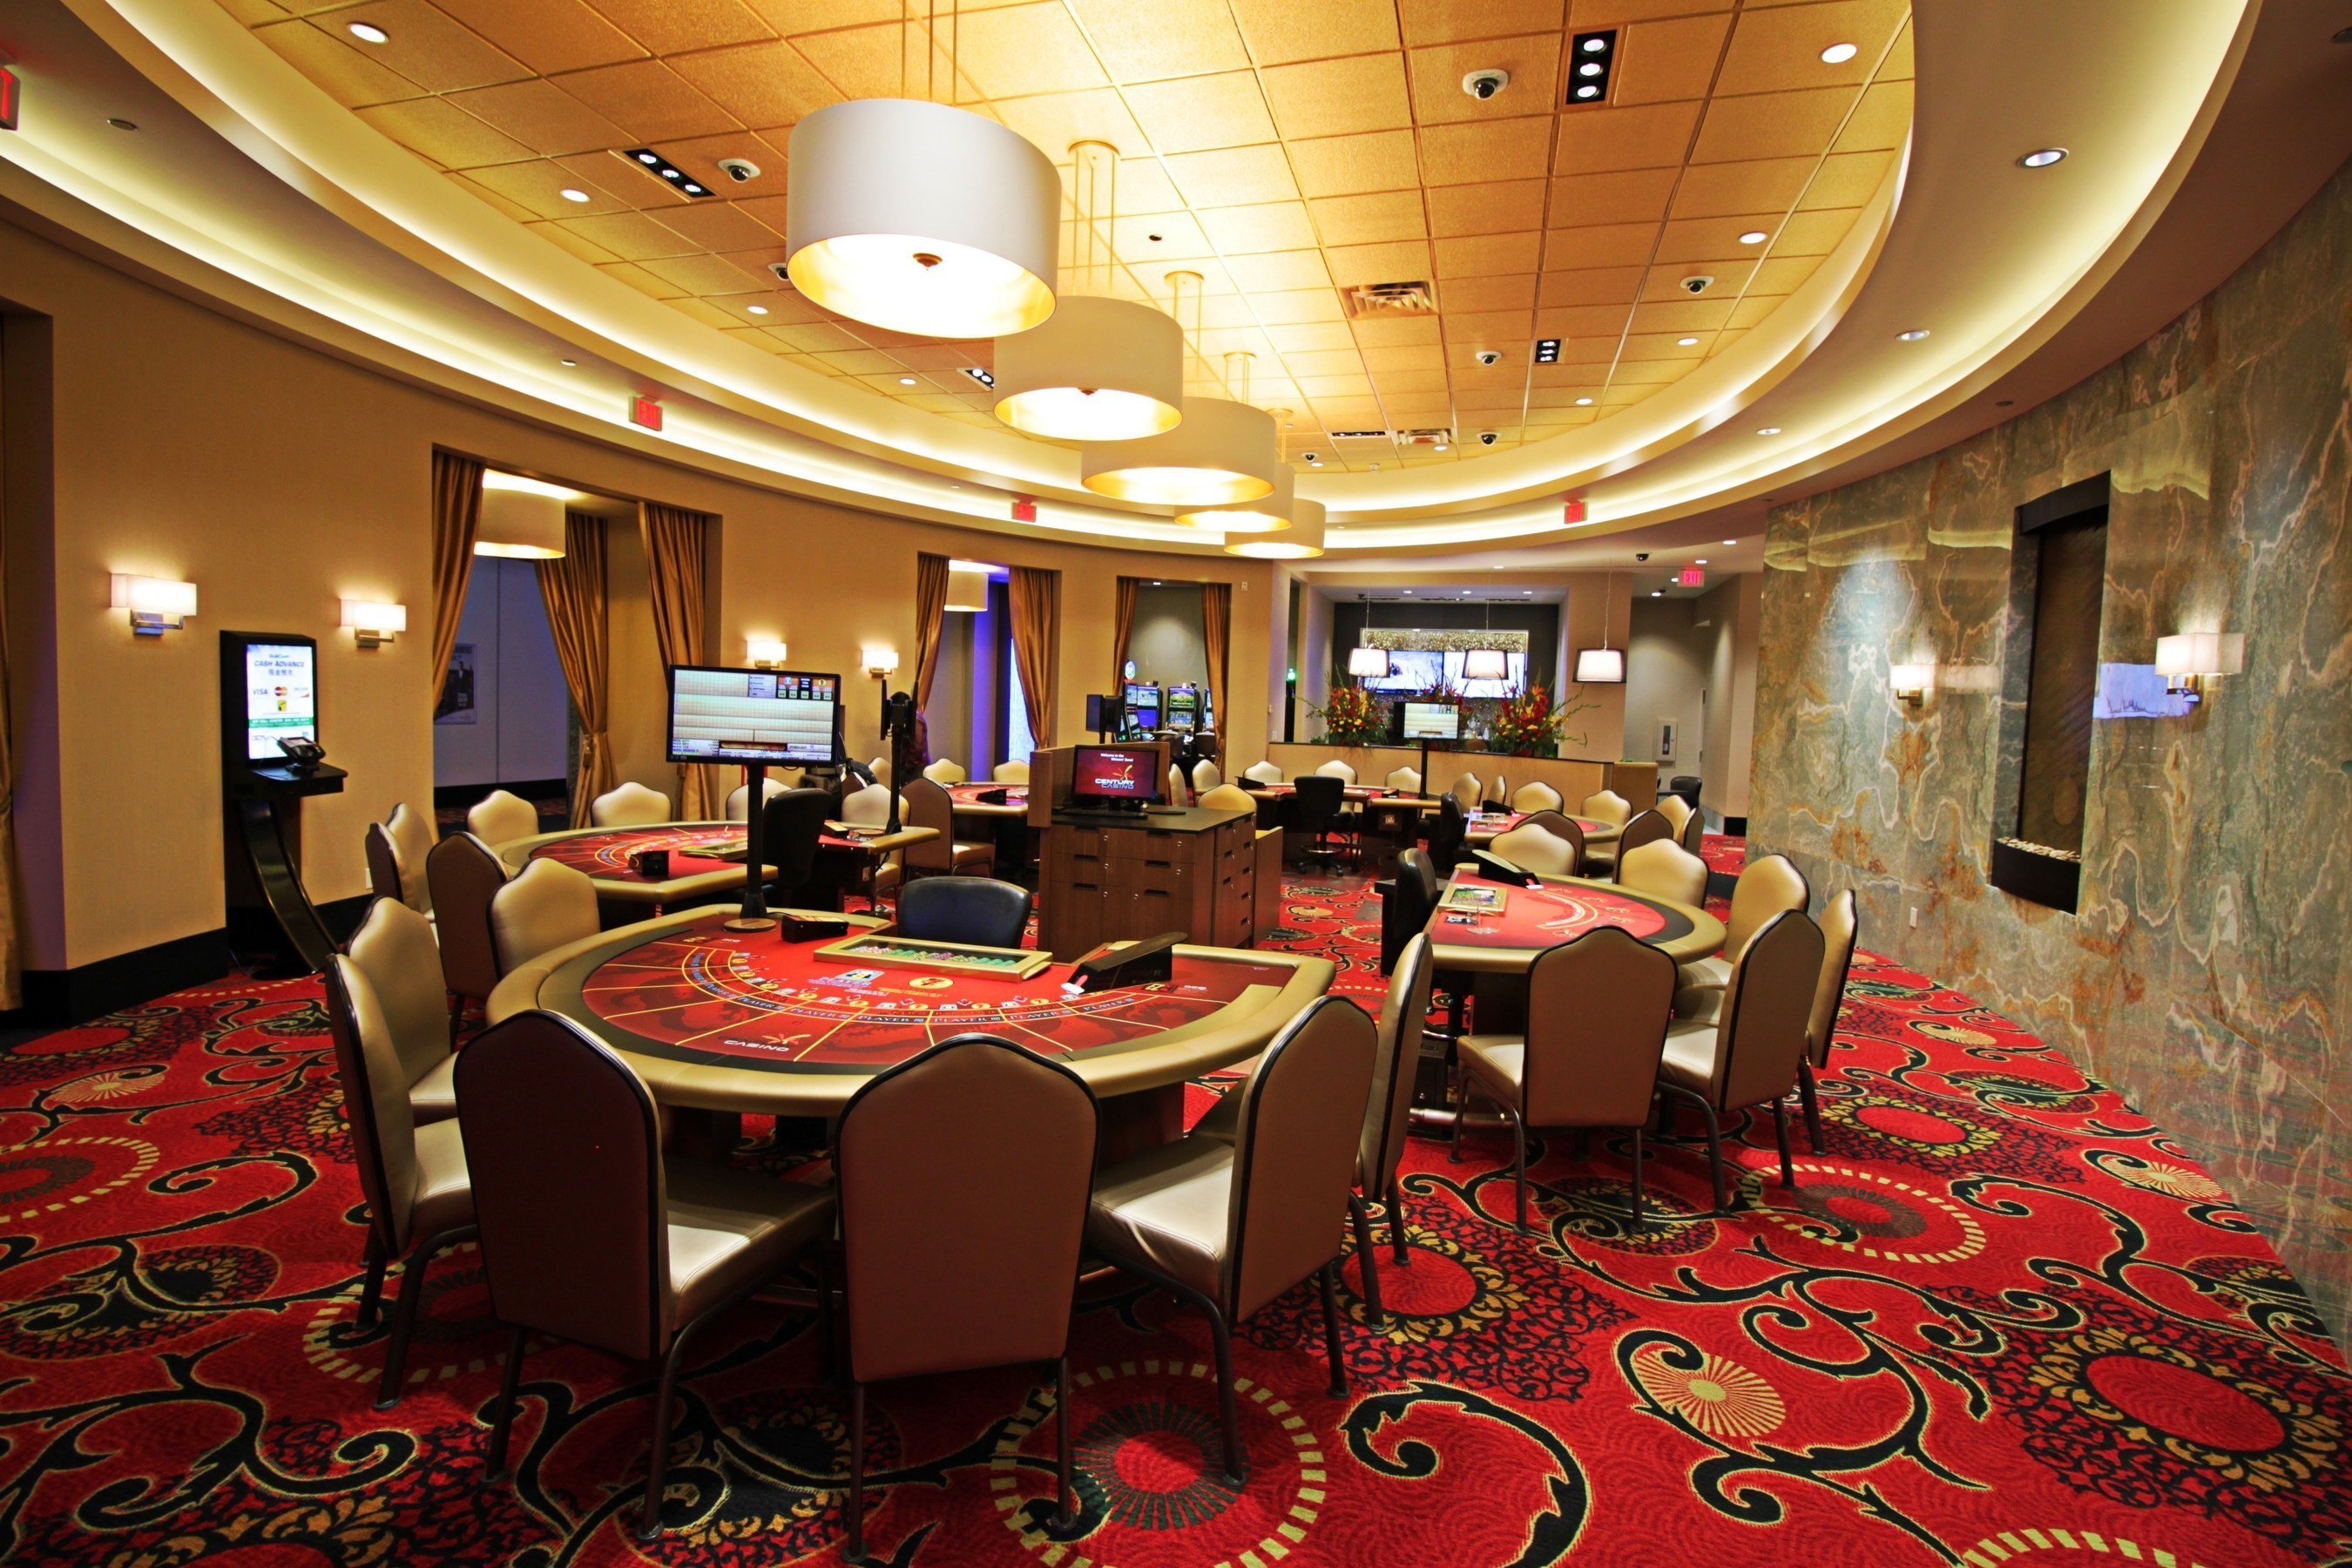 related www.casinoroom.com online casino casinoroom.com